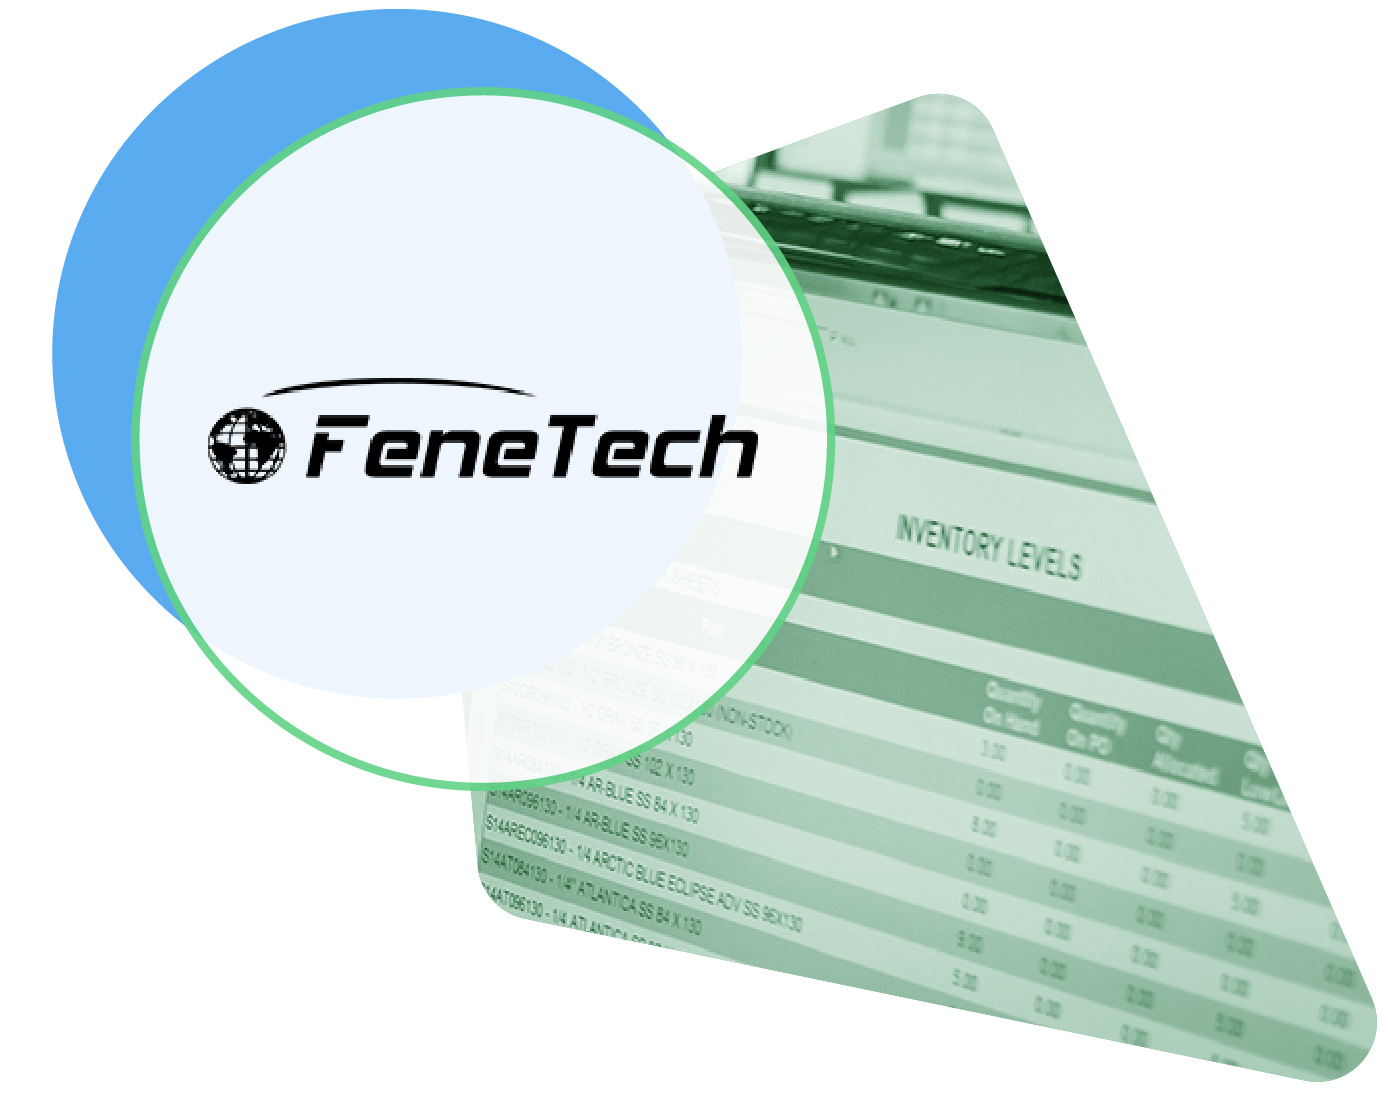 FeneTech logo